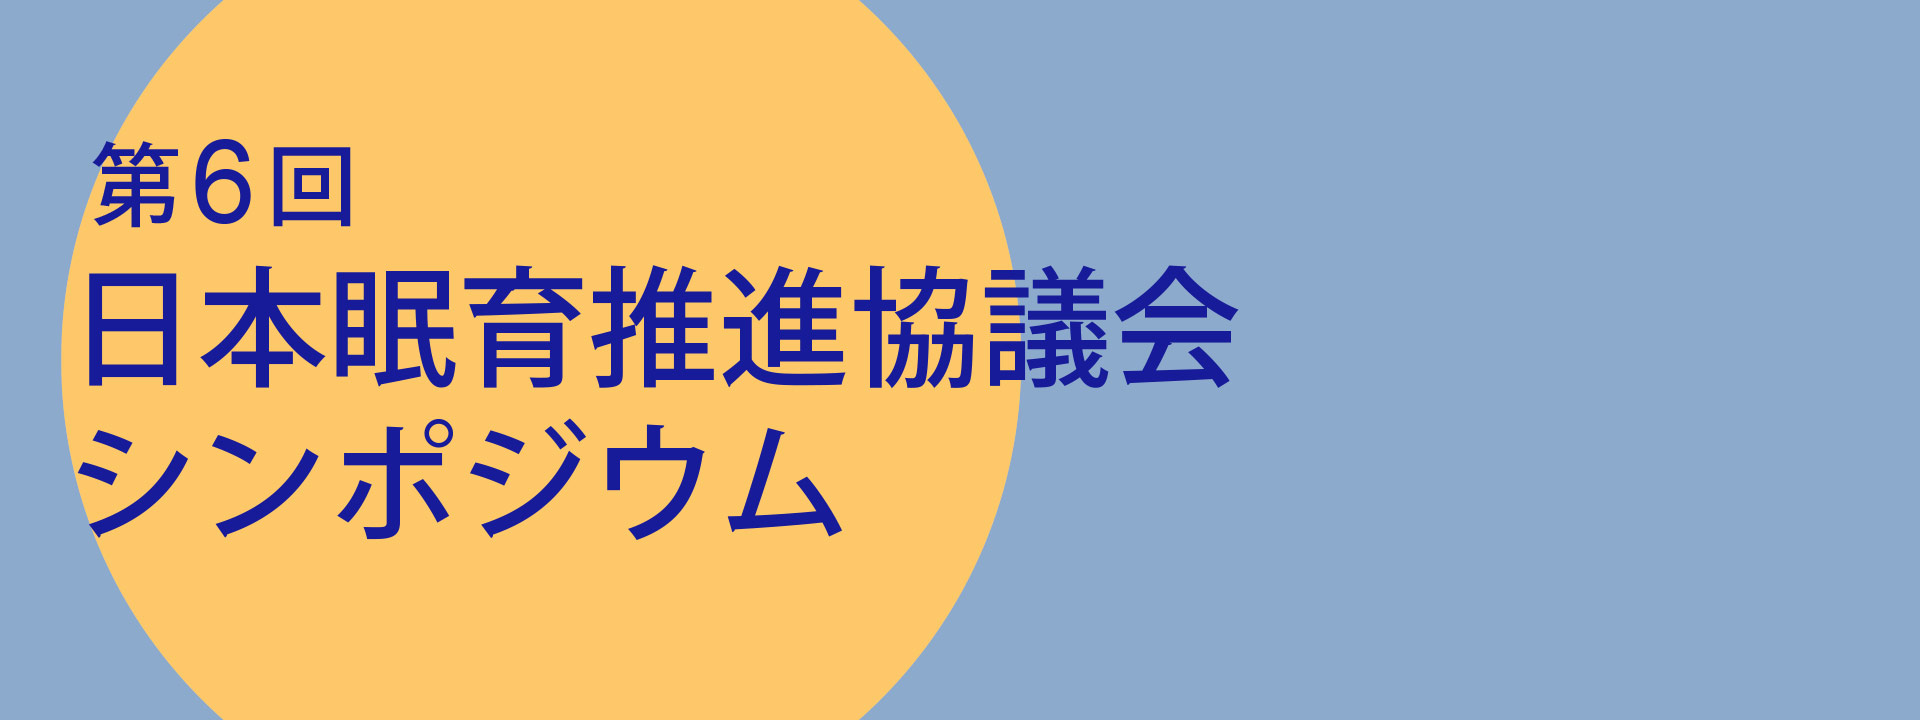 第6回日本眠育推進協議会シンポジウム